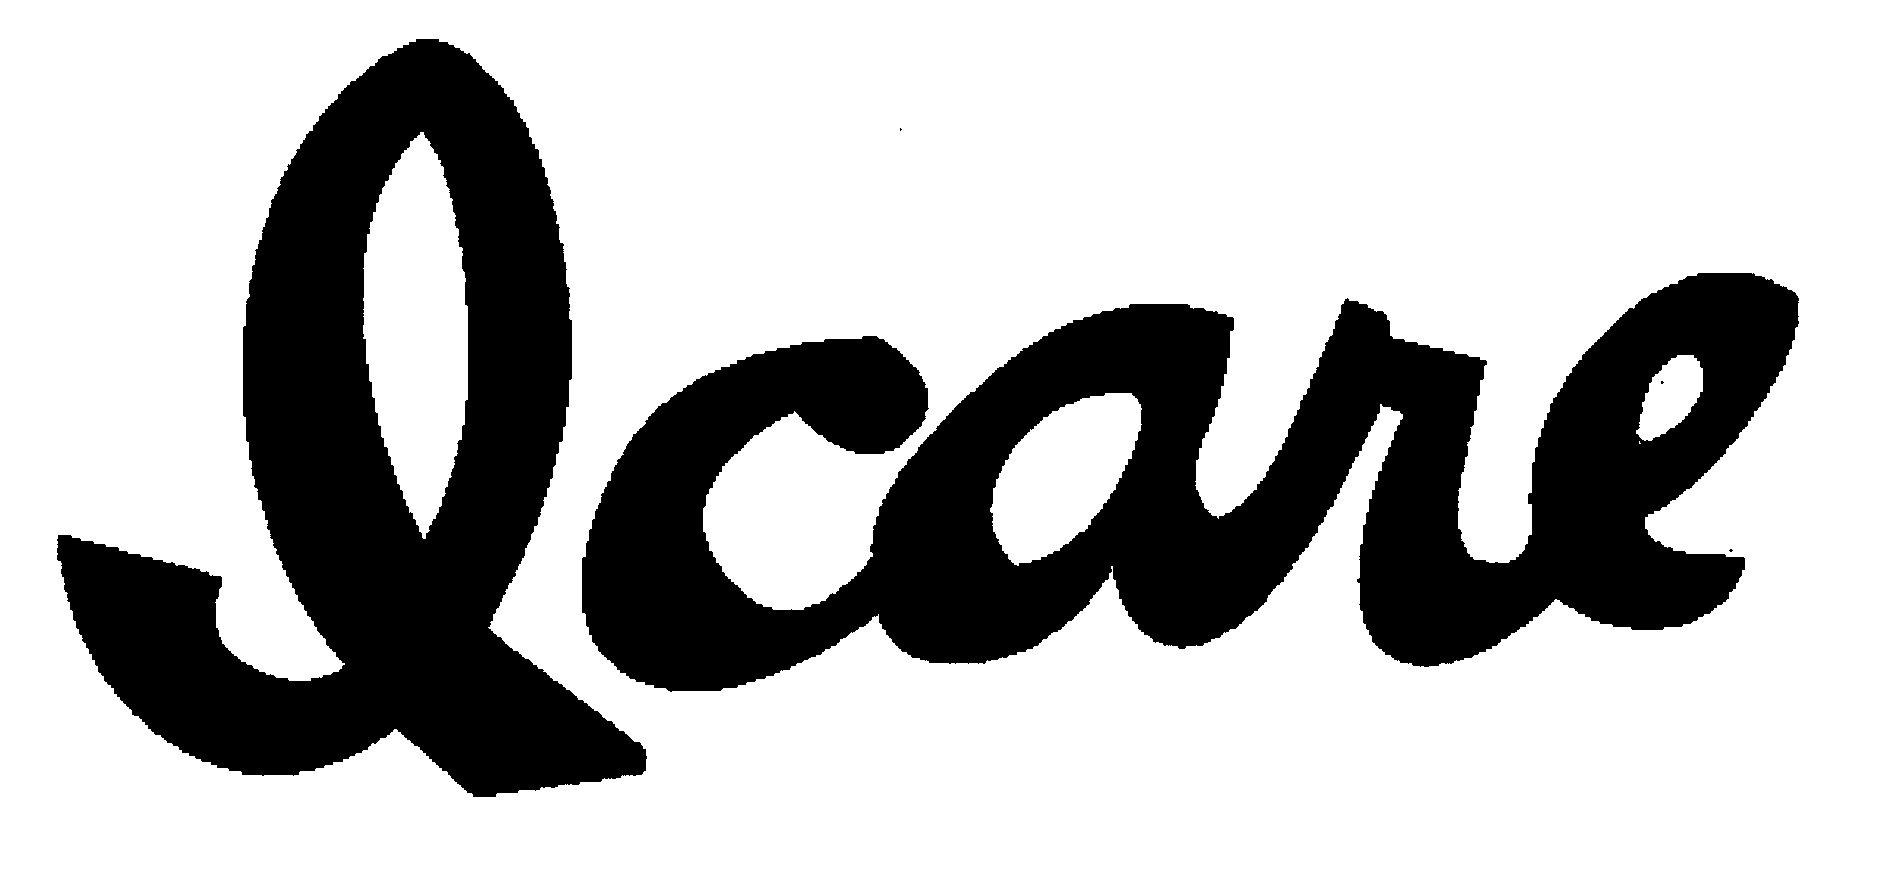 Trademark Logo I CARE